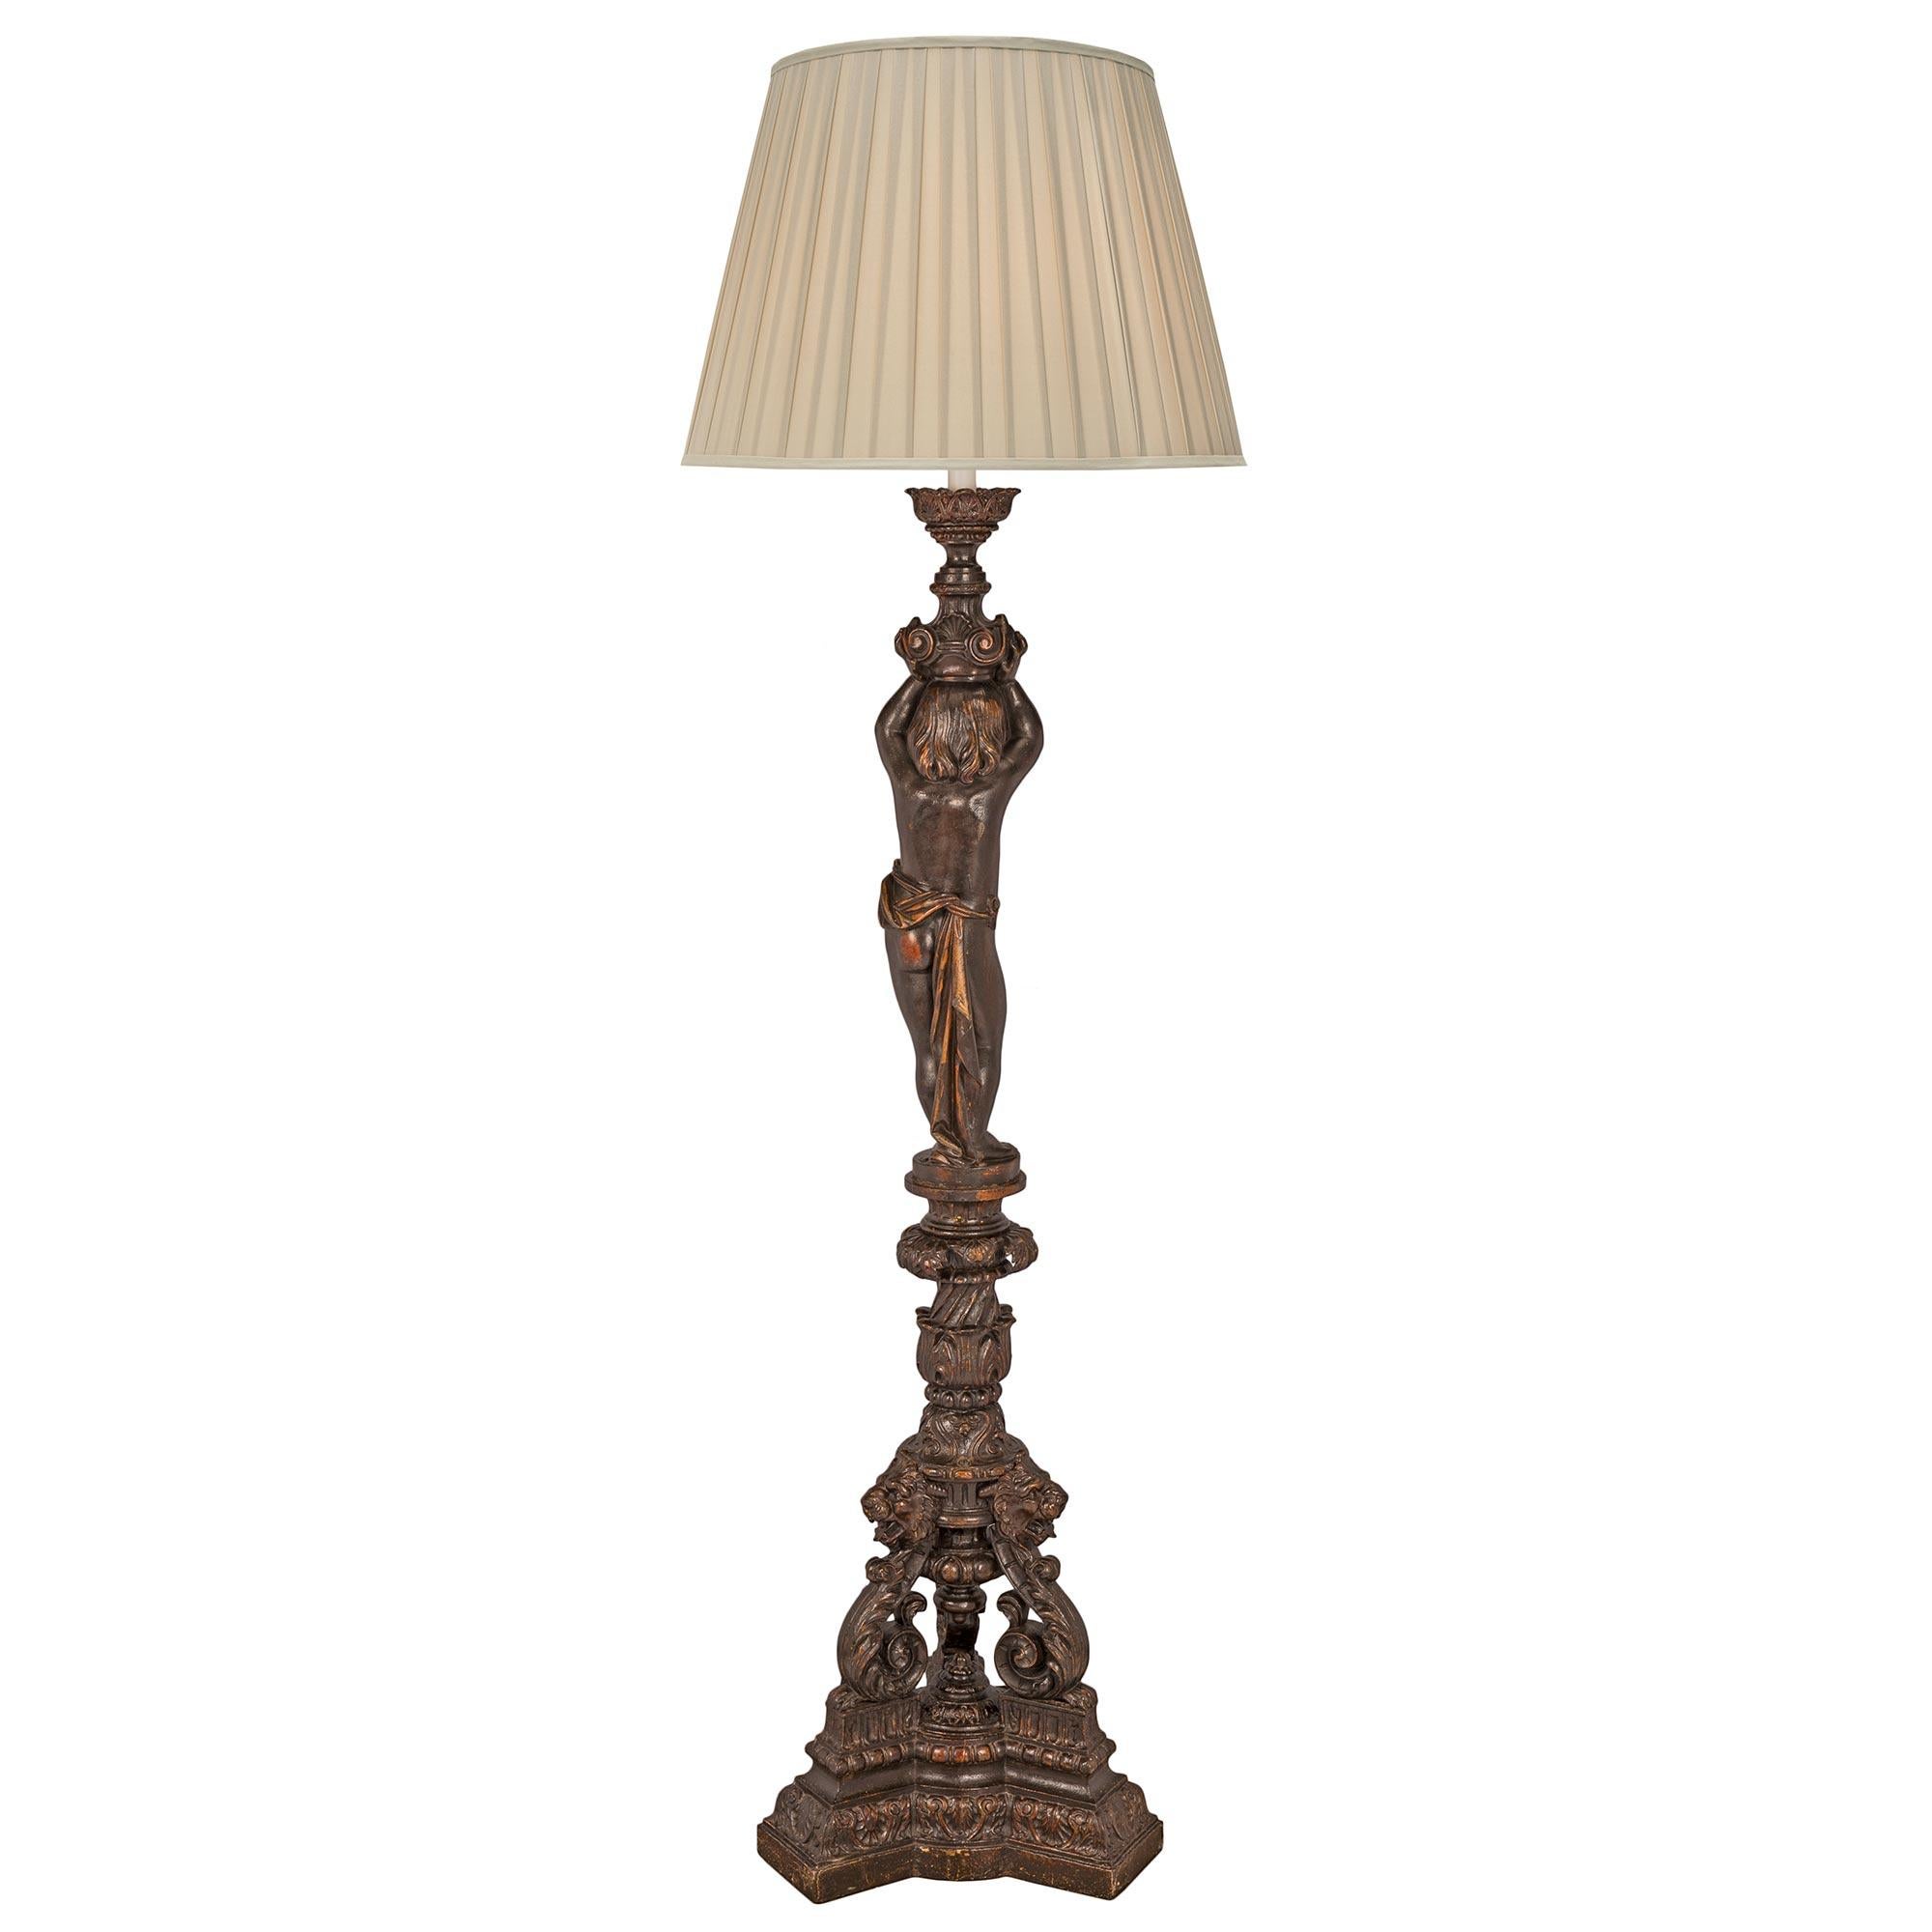 Un beau lampadaire de grande taille en fonte de style Louis XVI du 19ème siècle. Le lampadaire est surélevé par une base triangulaire aux côtés convexes et aux angles coupés. La base présente un joli motif marbré en escalier avec des palmettes